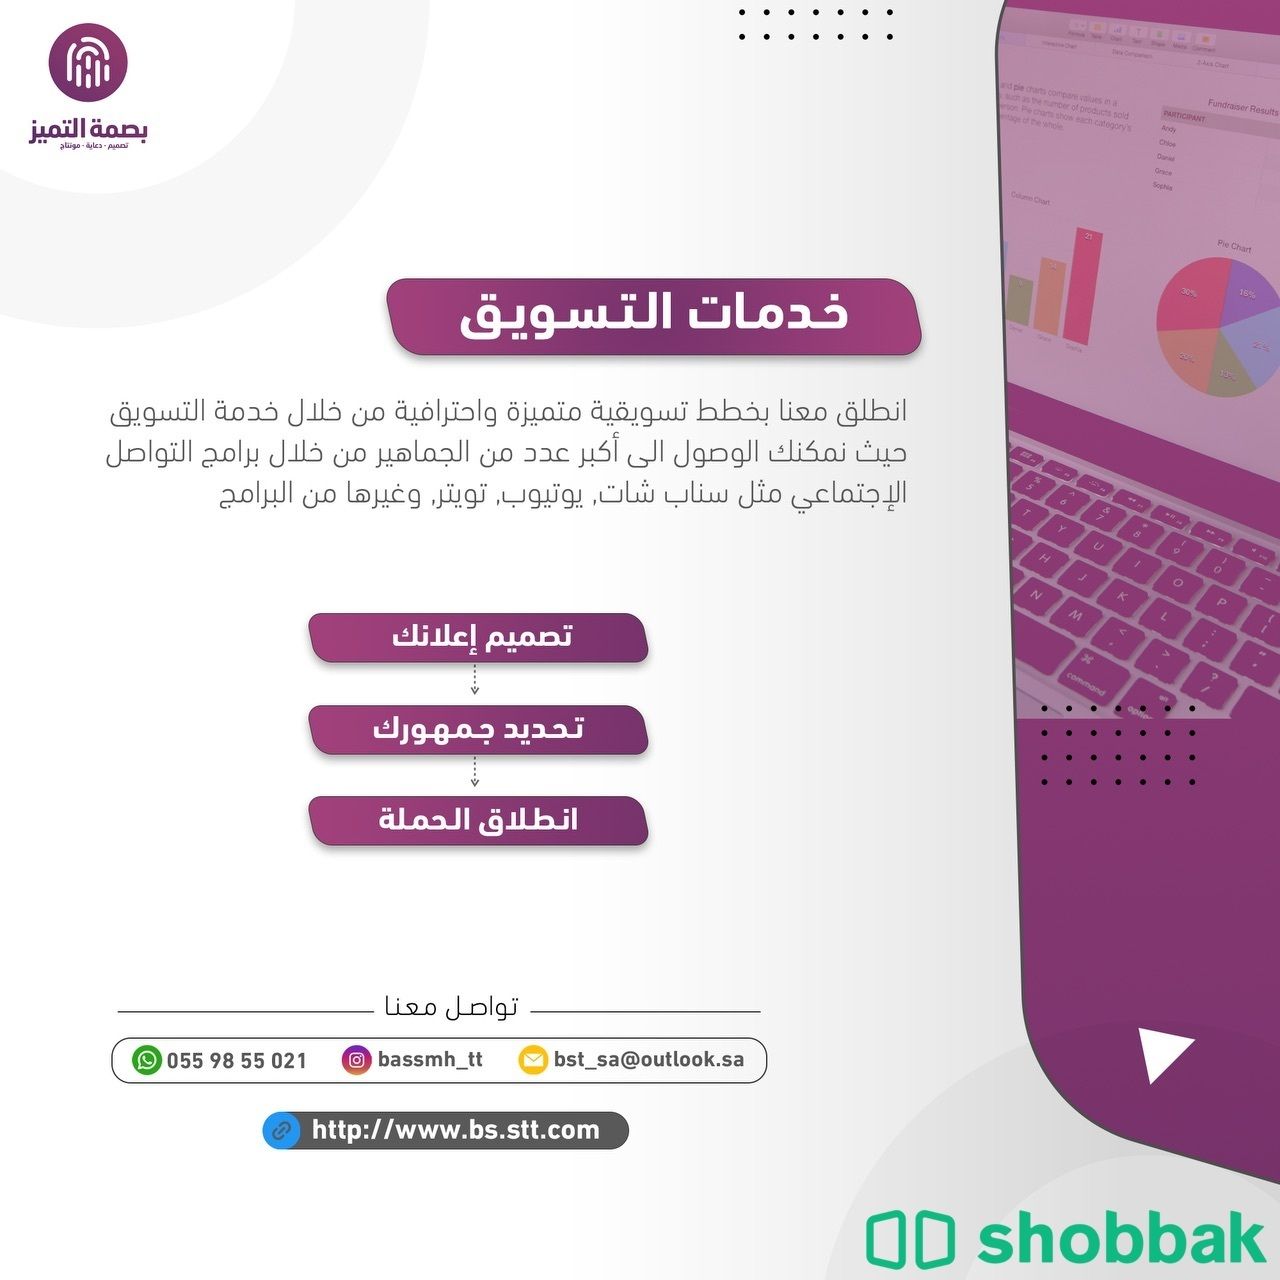 خدمات تصاميم جرافيكية Shobbak Saudi Arabia